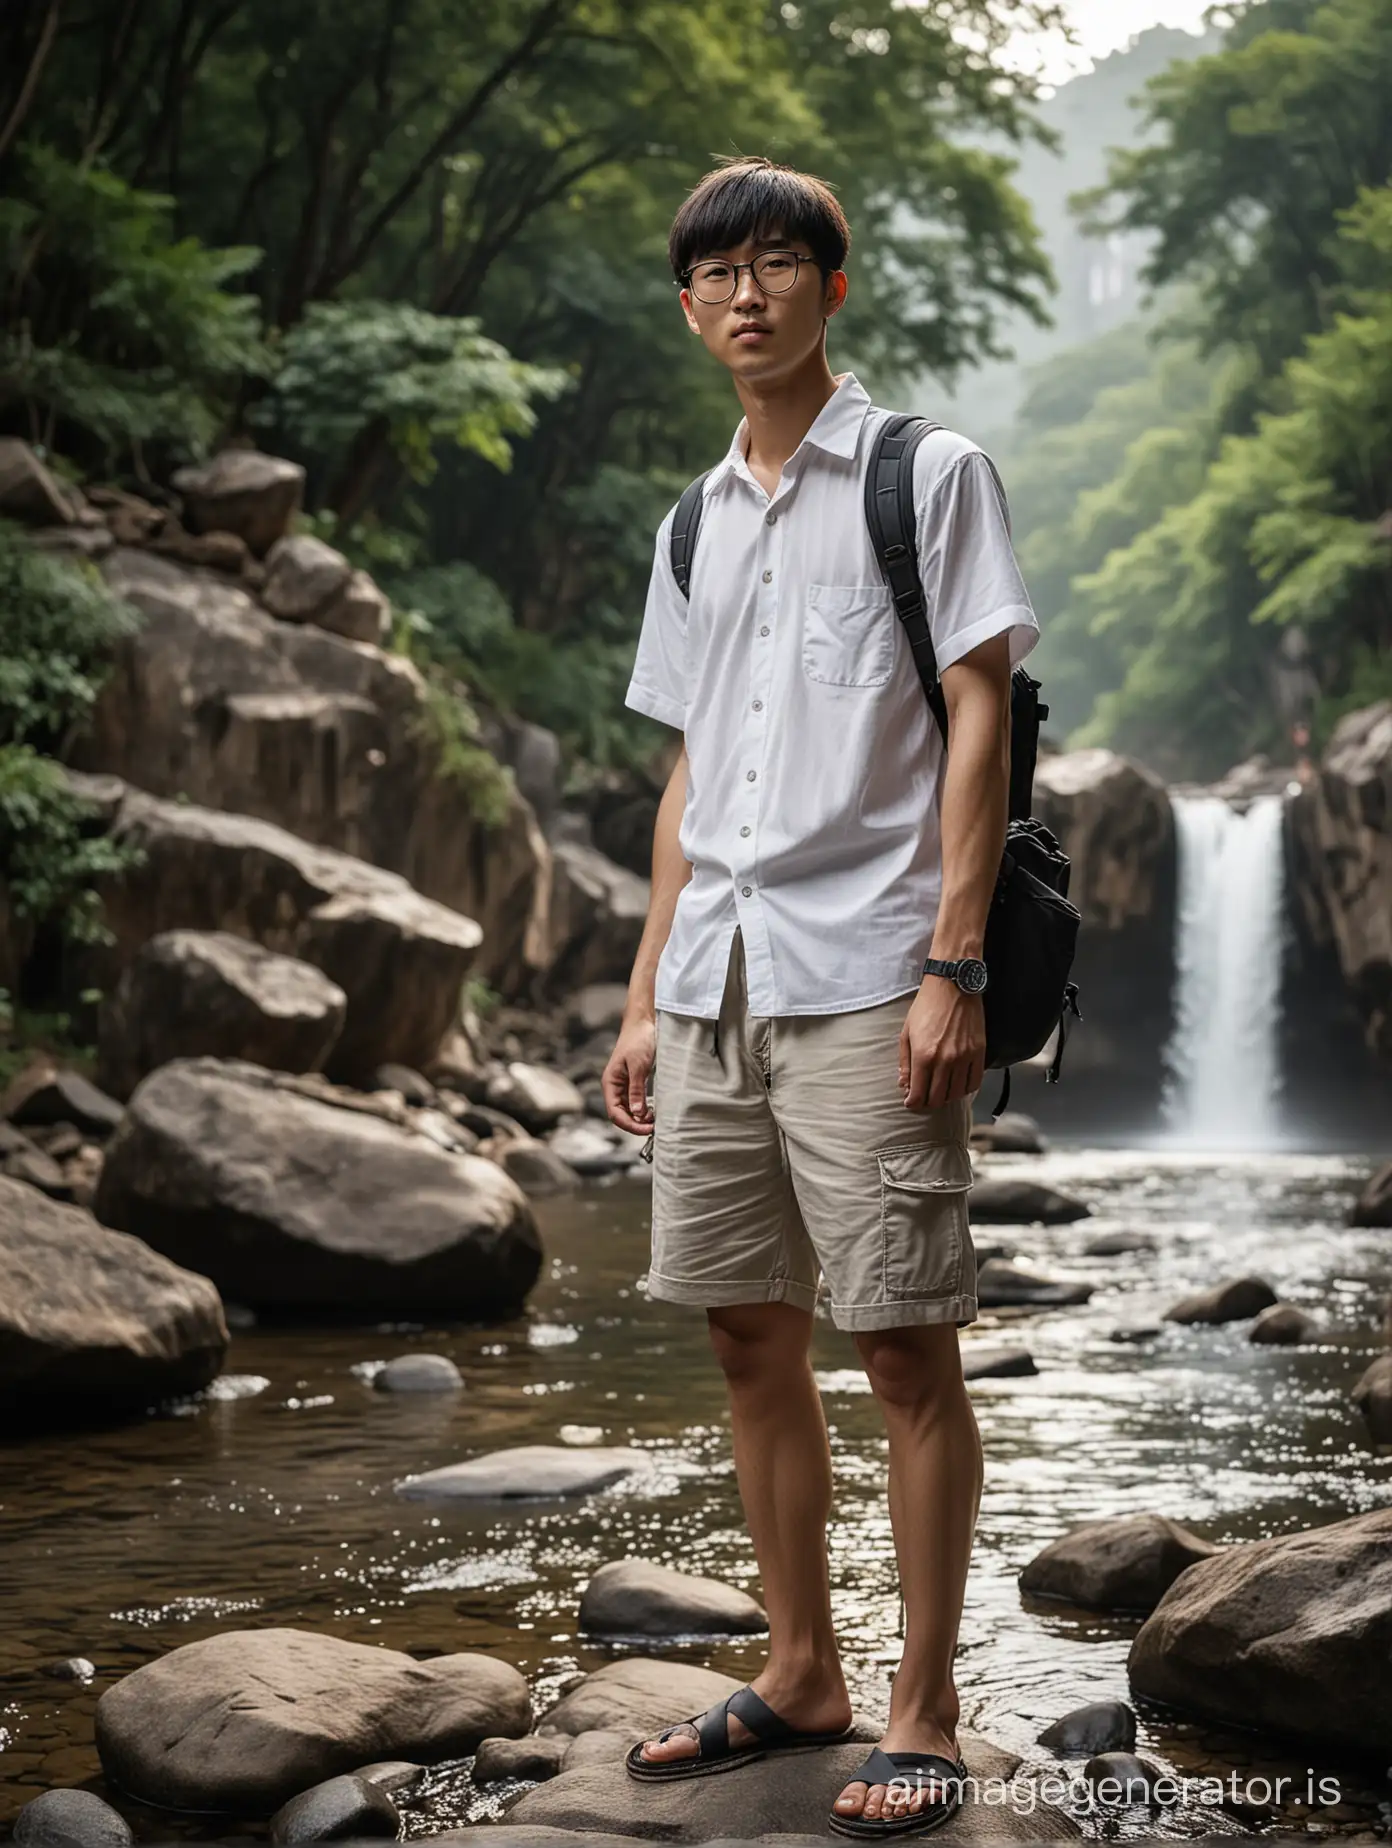 Korean-Man-with-Fuji-XT30-Camera-Daydreaming-by-Natural-Waterfall